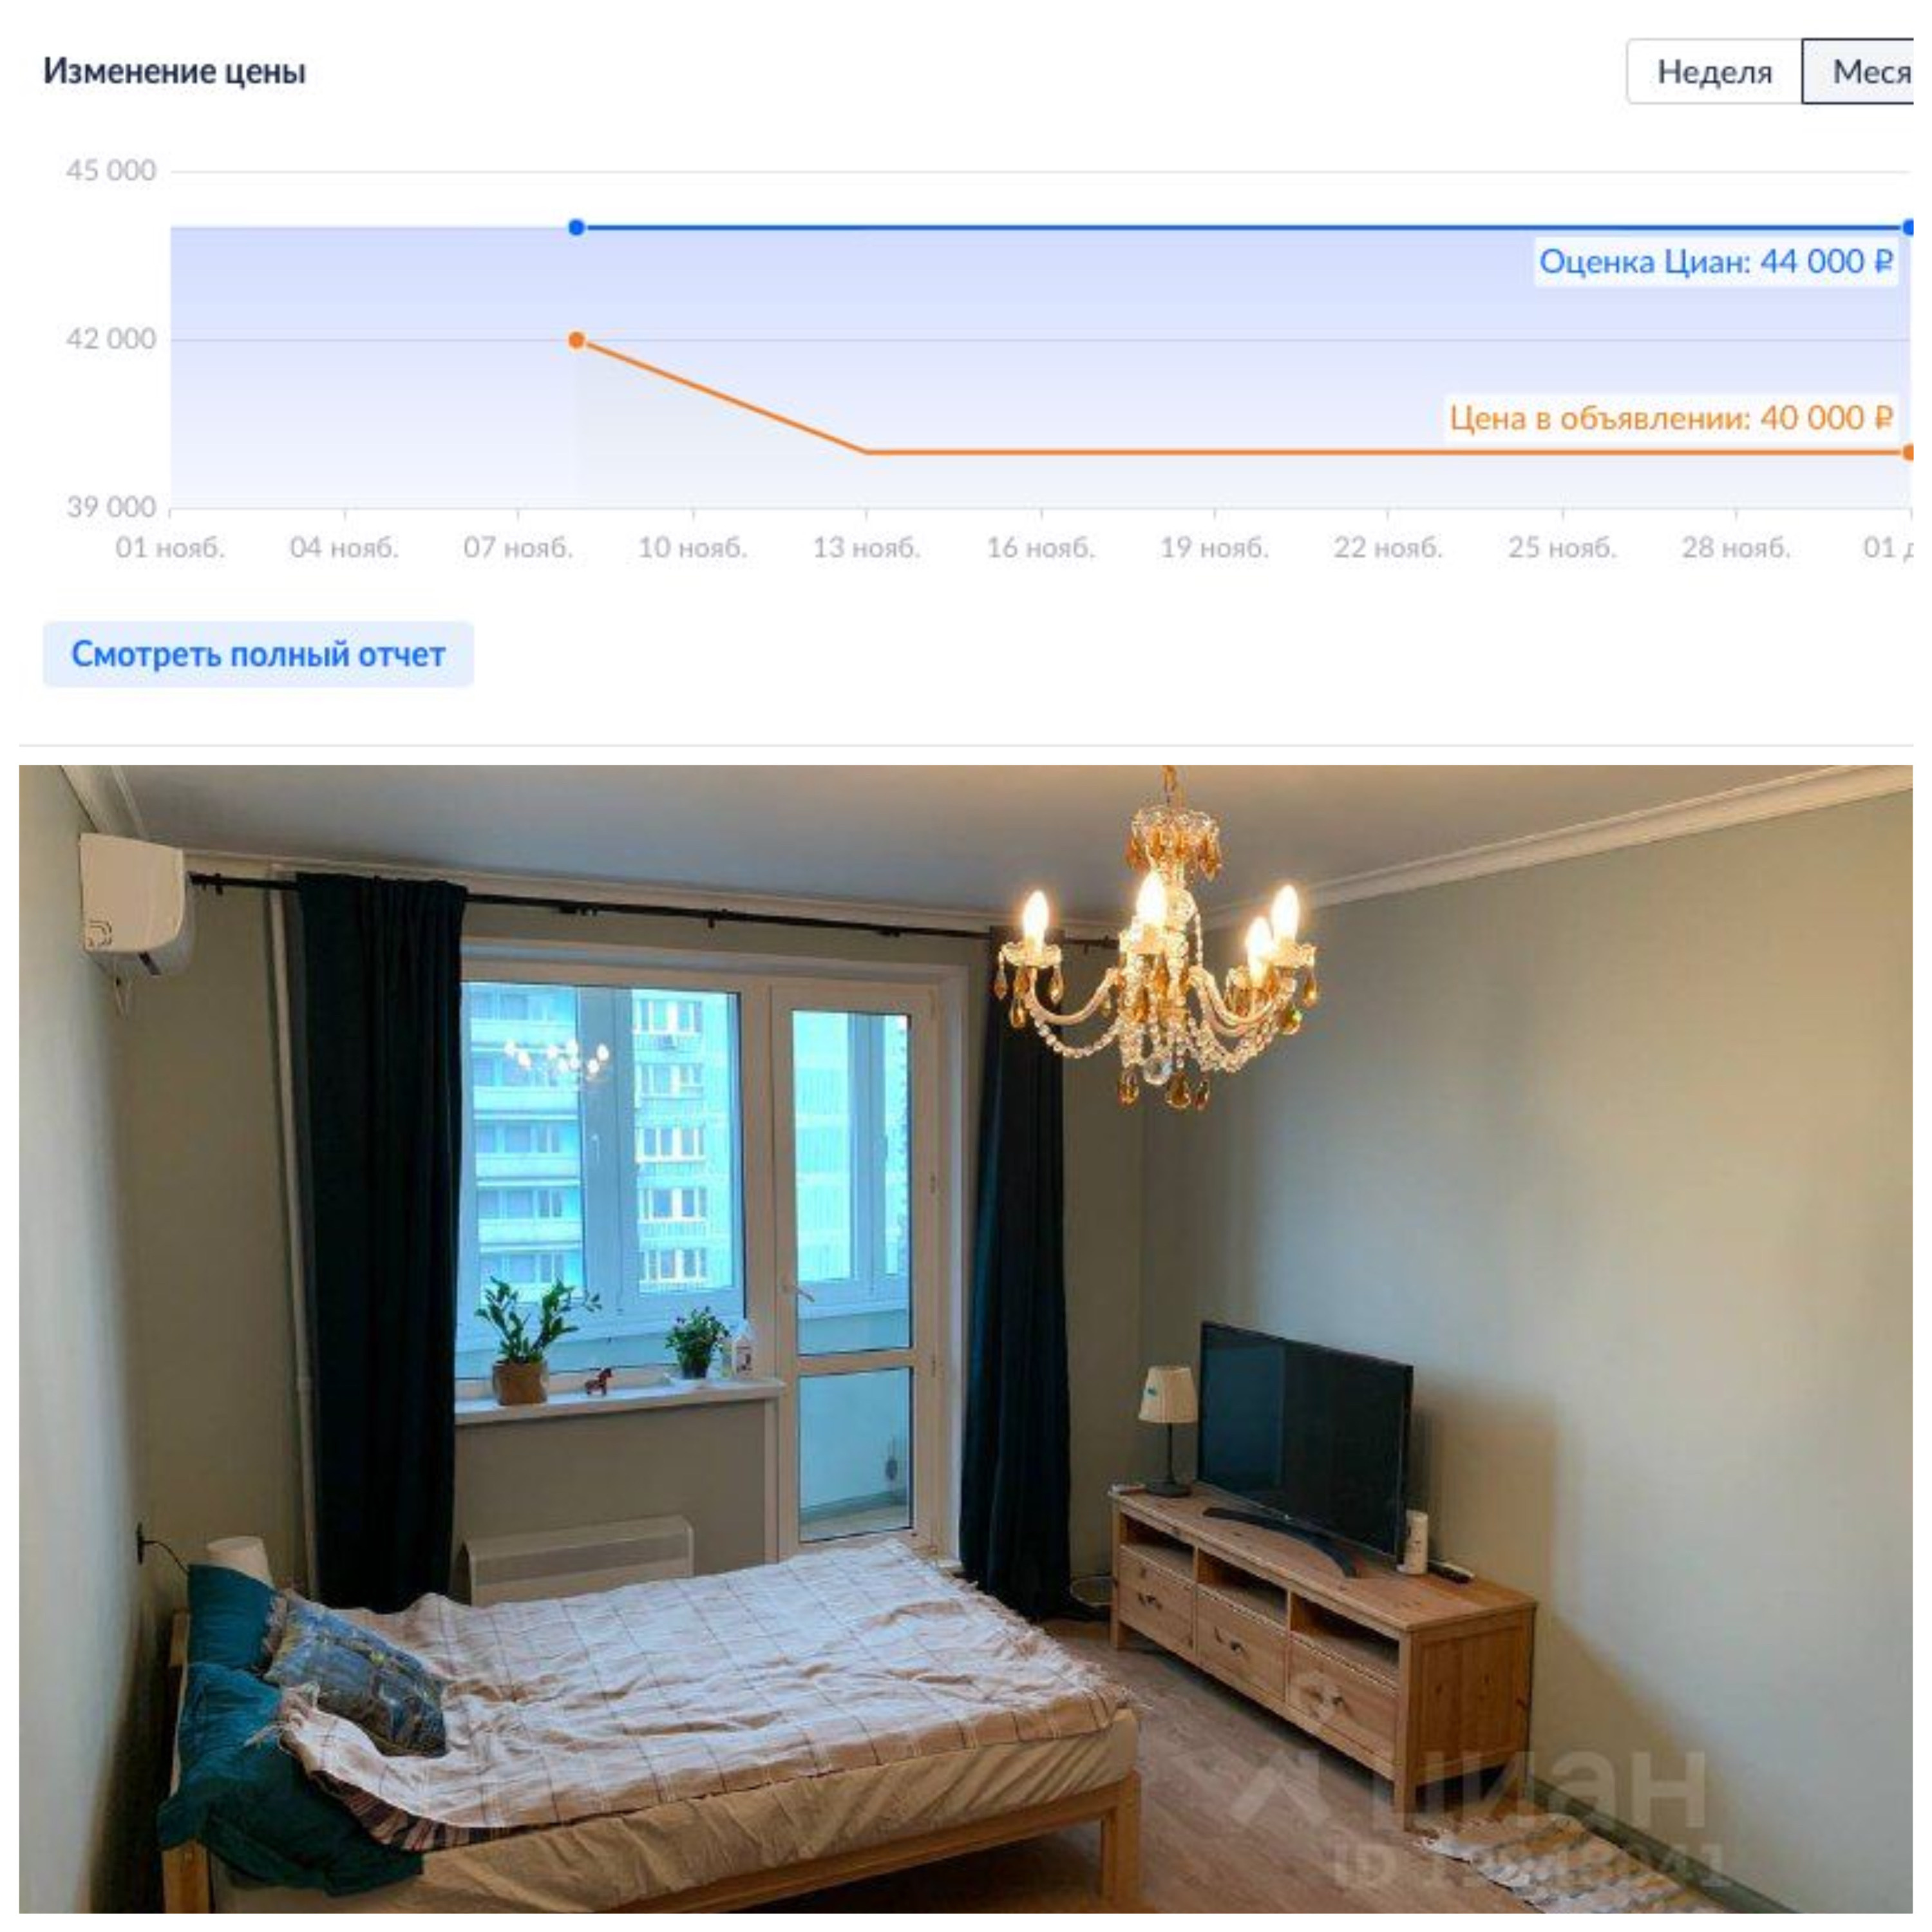 Недвижимость дешевеет в Москве. Сонник видеть квартиру